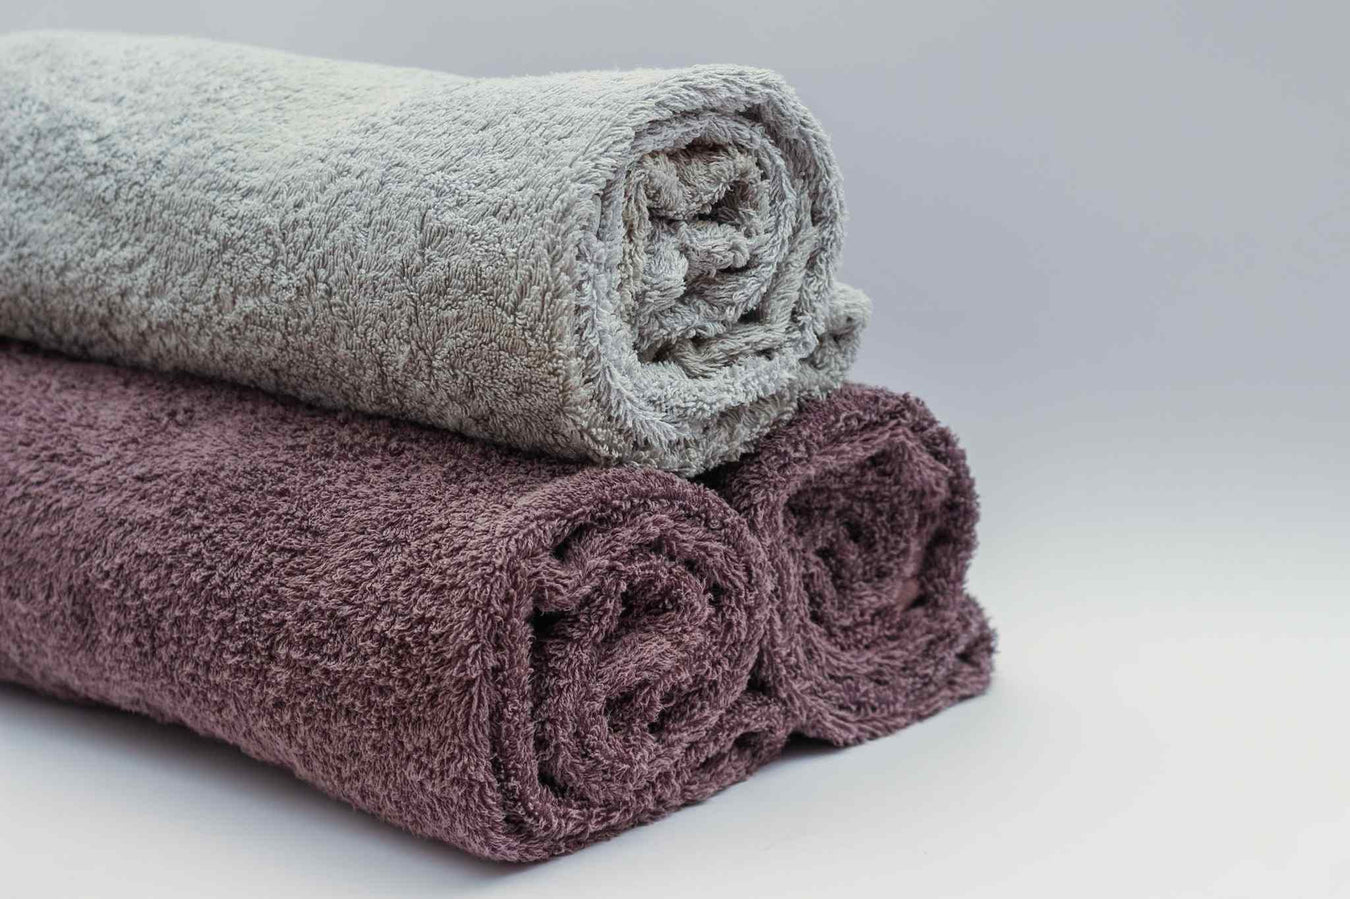 towels_657e9abe-1922-449e-b5a8-6865b12cbb3b